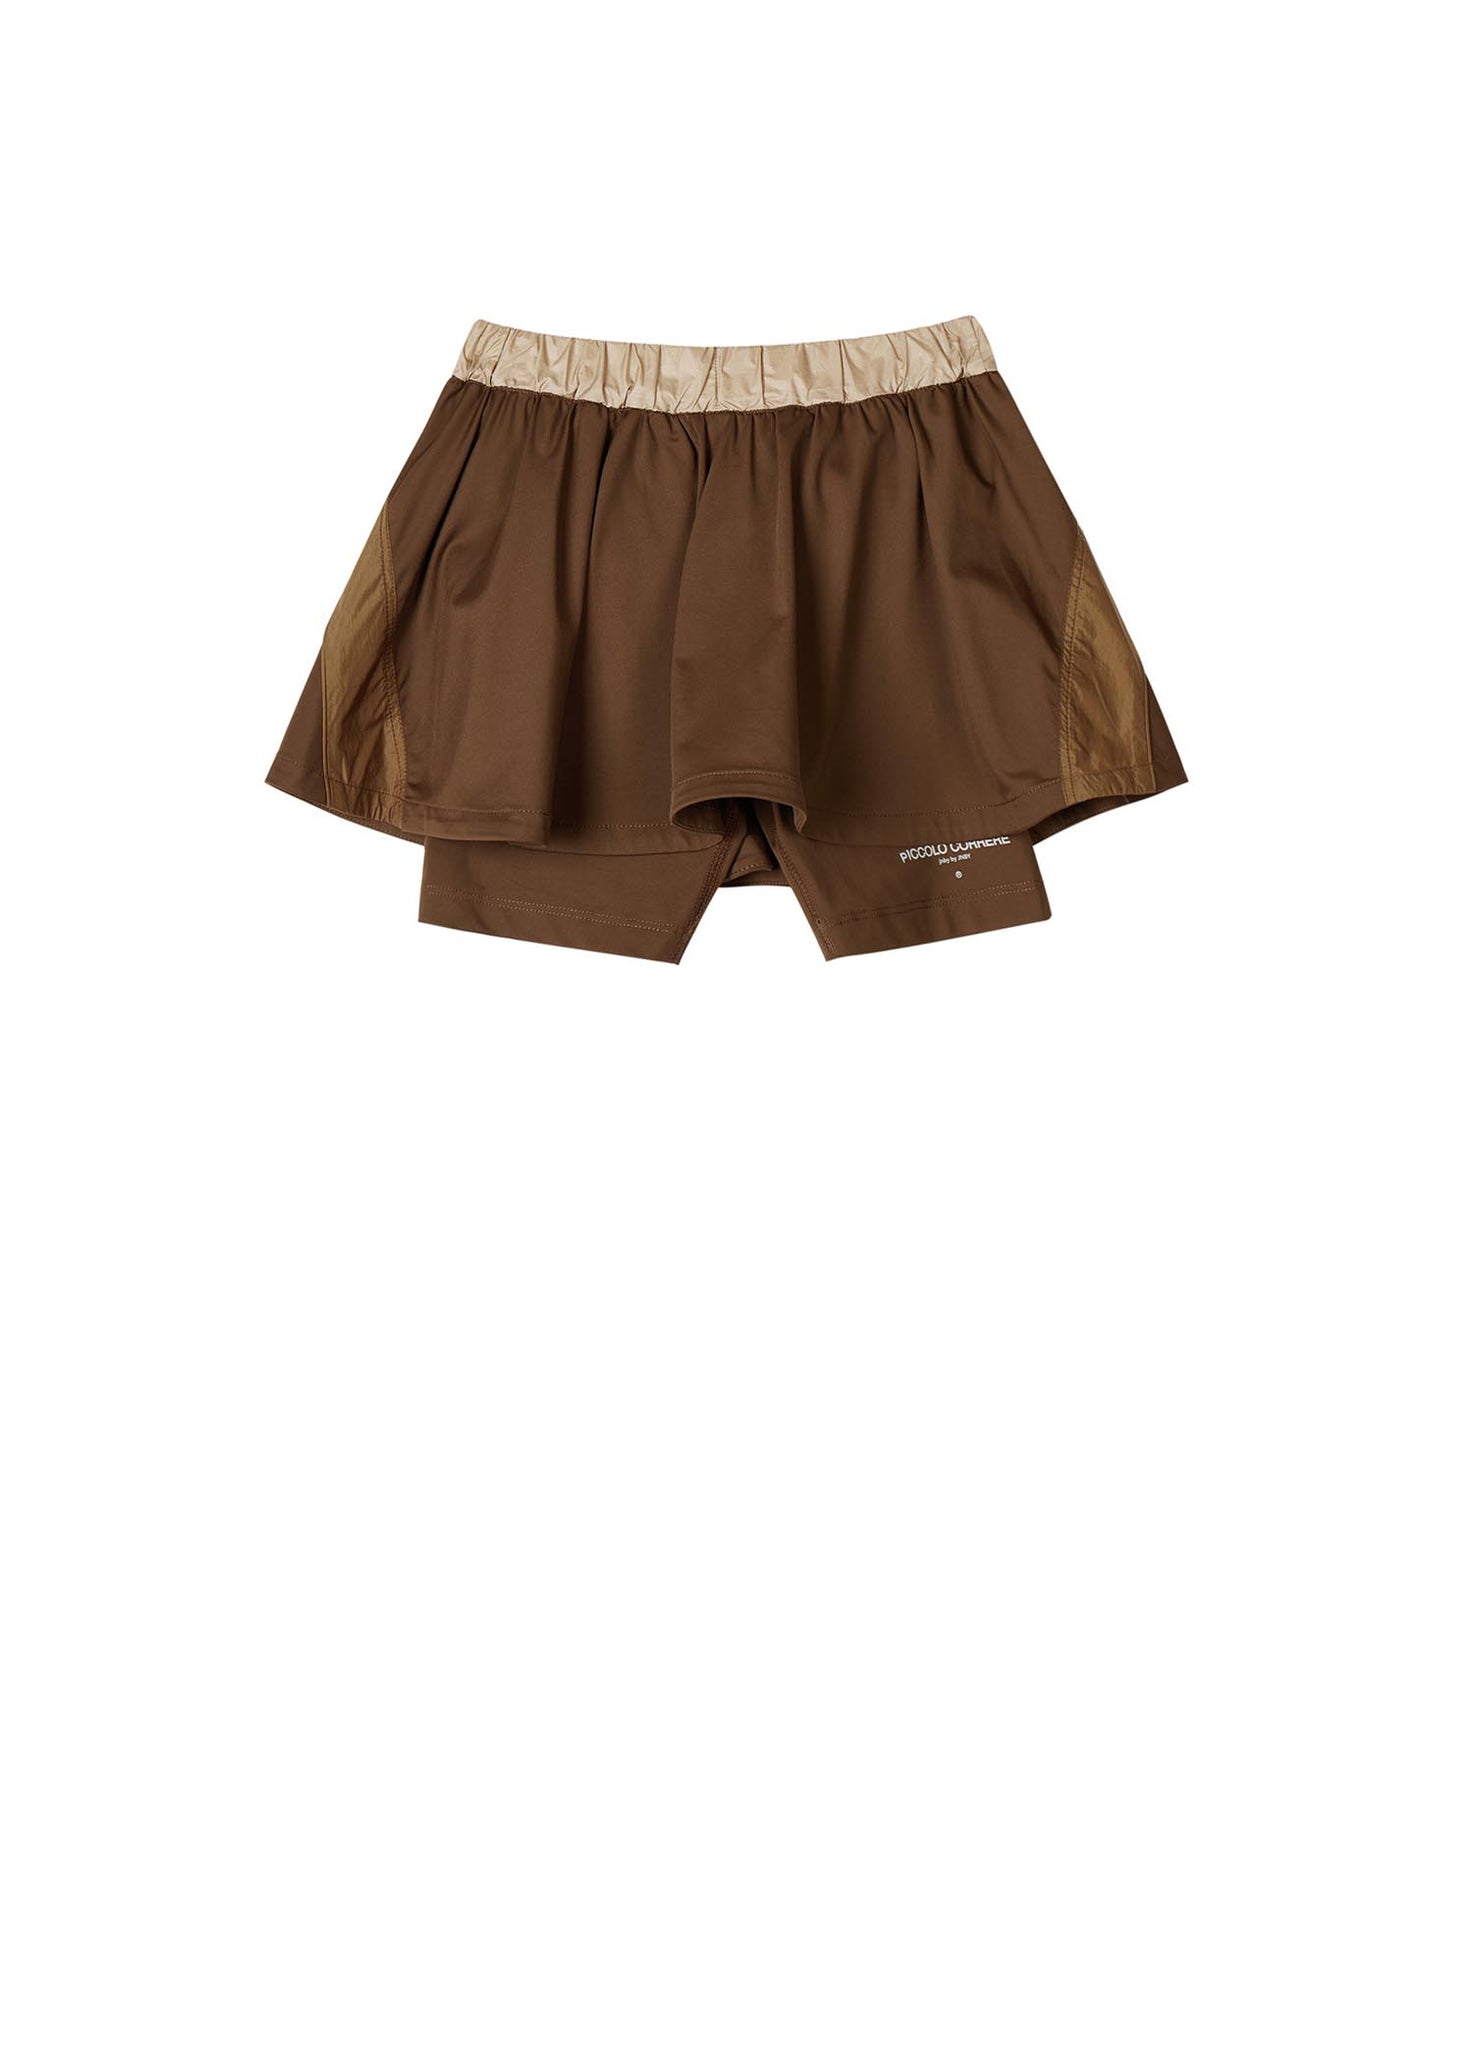 Skirt / jnby by JNBY Elasticated Short Skirt